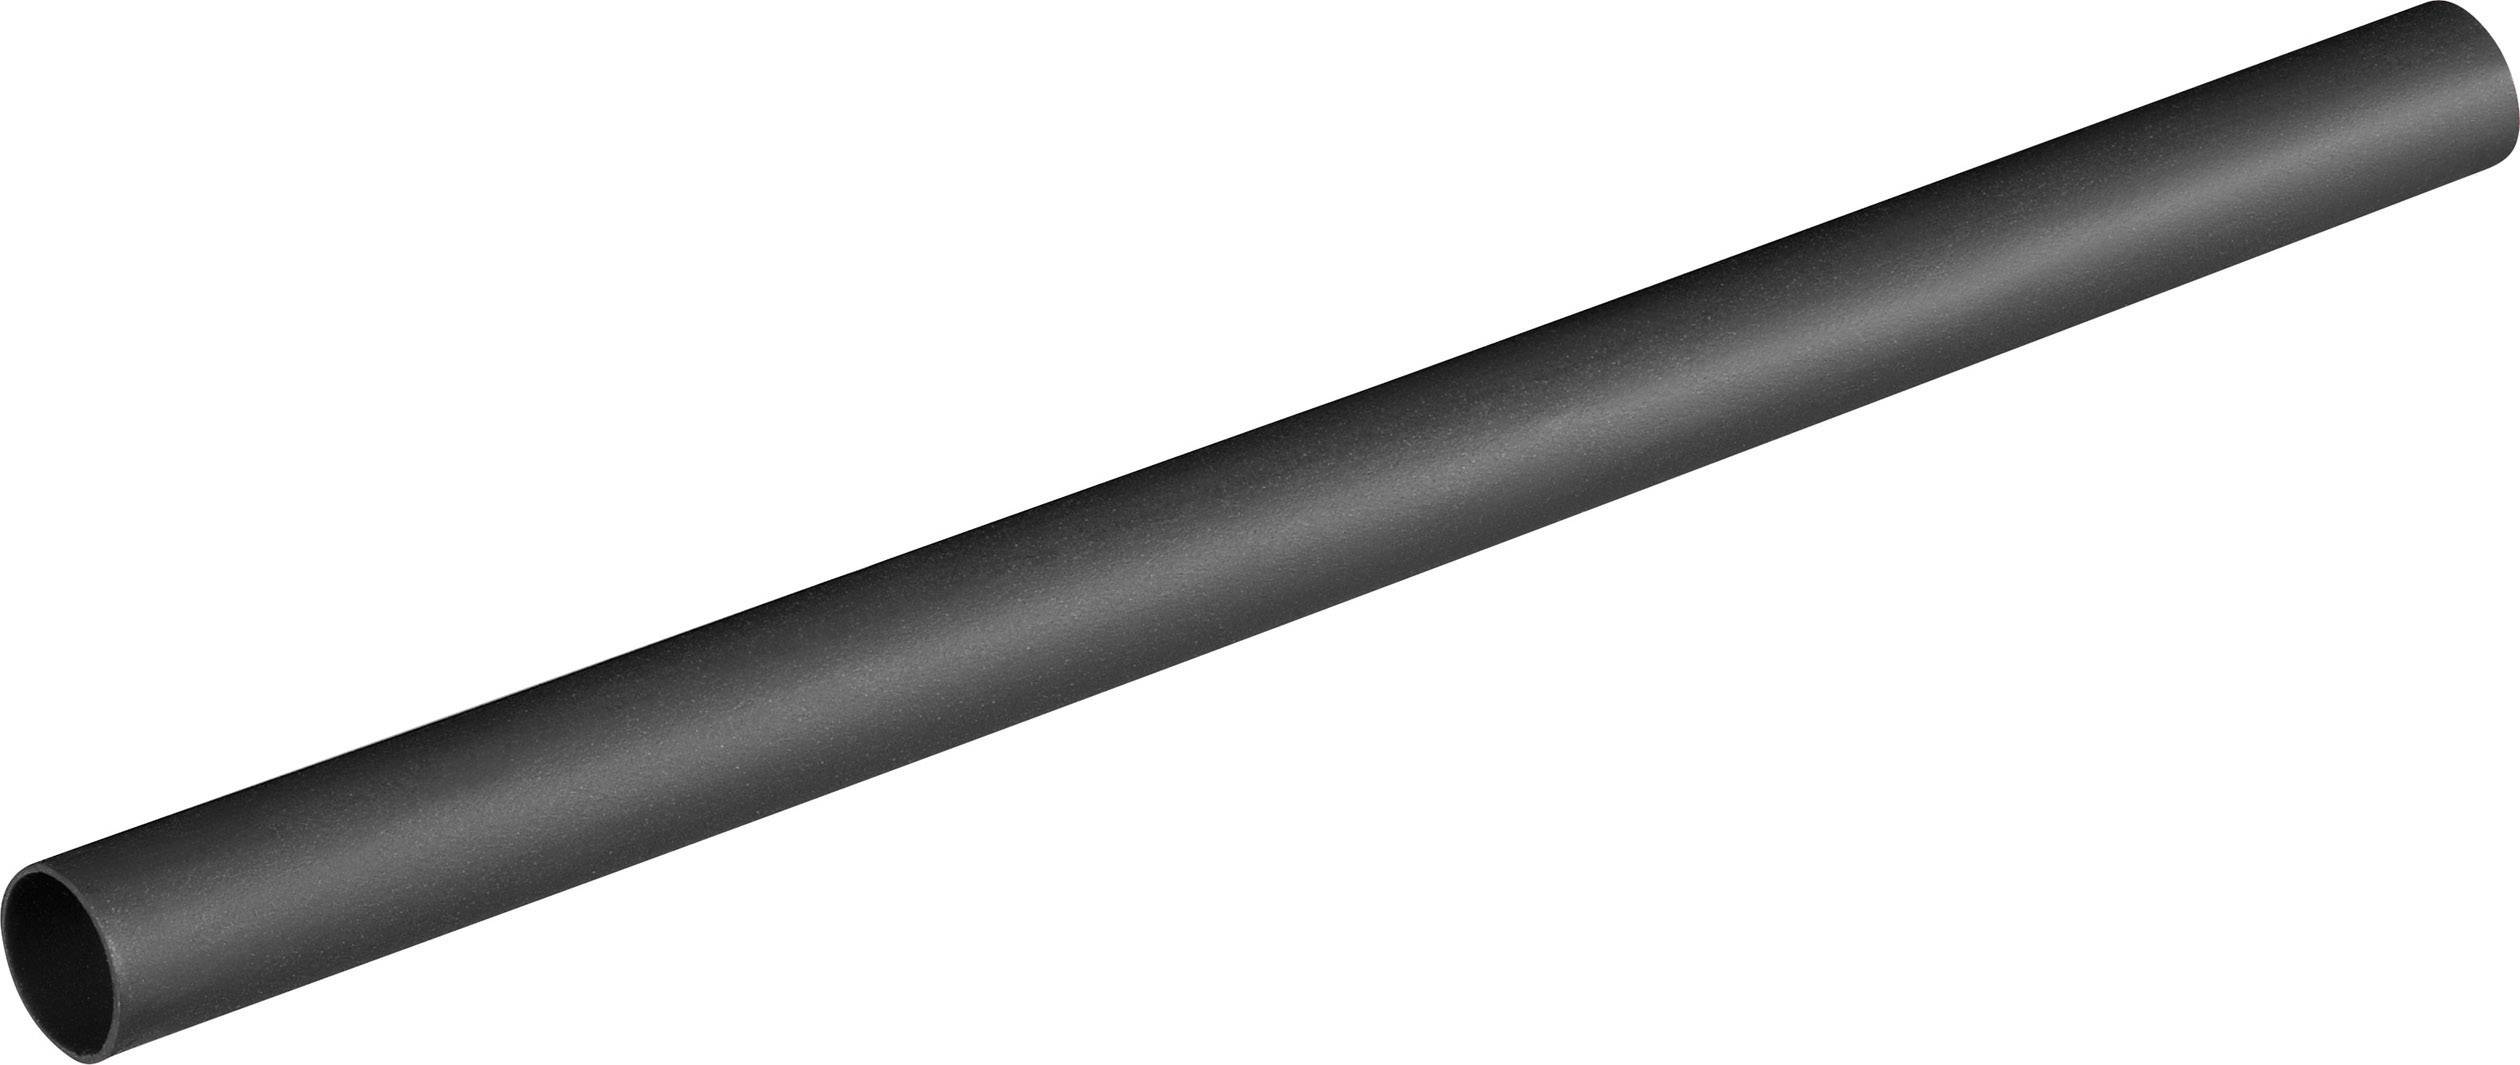 Schrumpfschlauch mit Kleber 1m ; 6:1 33,0-5,5mm ; Schwarz